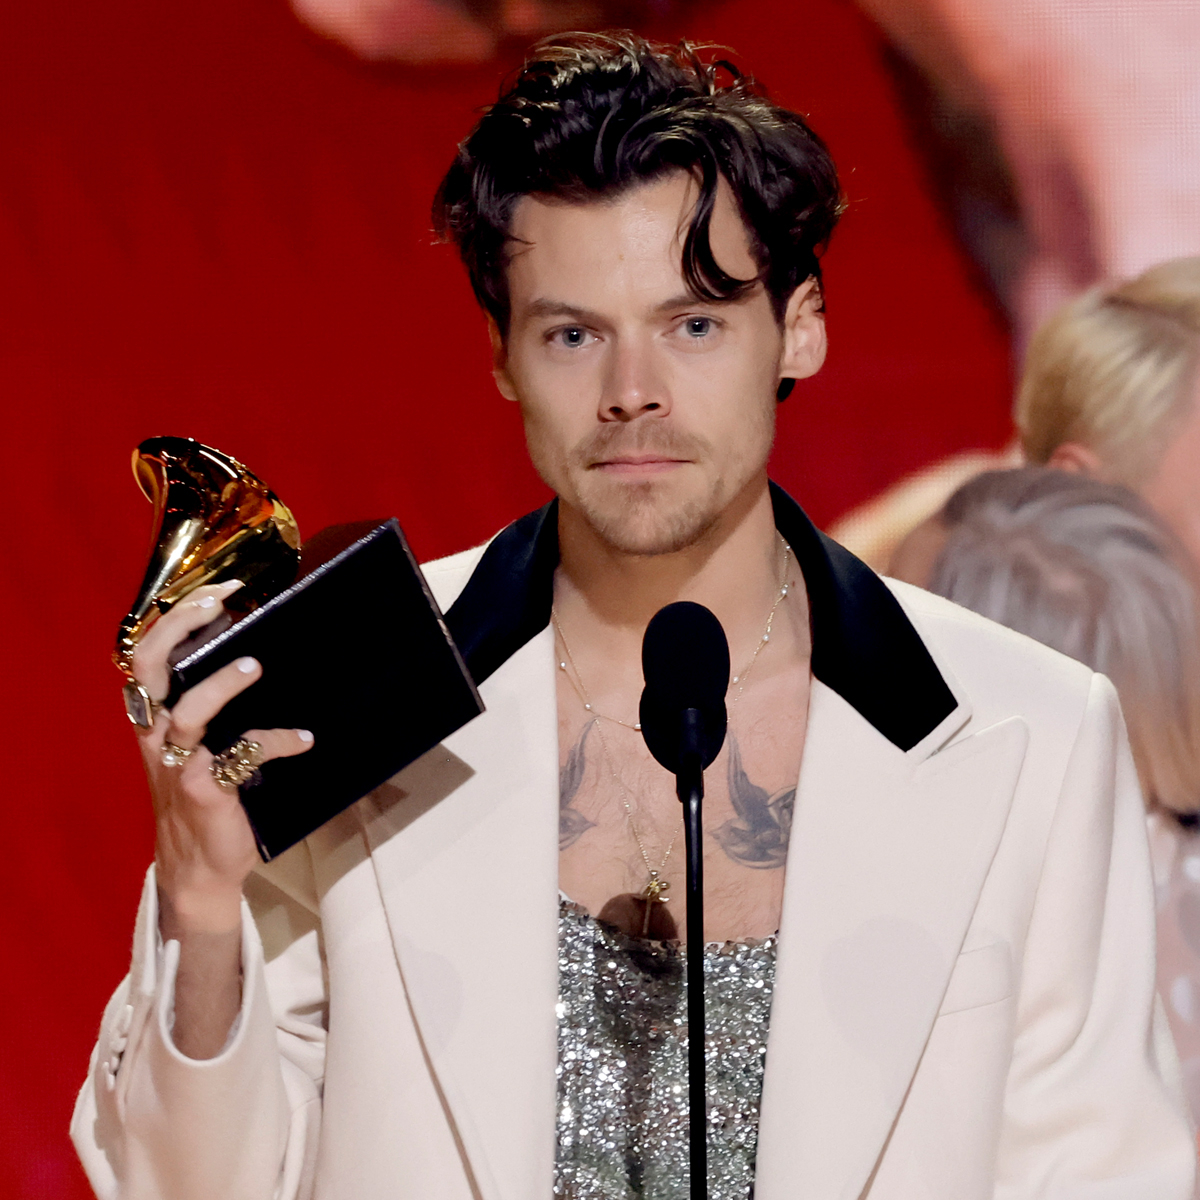 Grammy awards 2023: list of winners, Grammy awards 2023